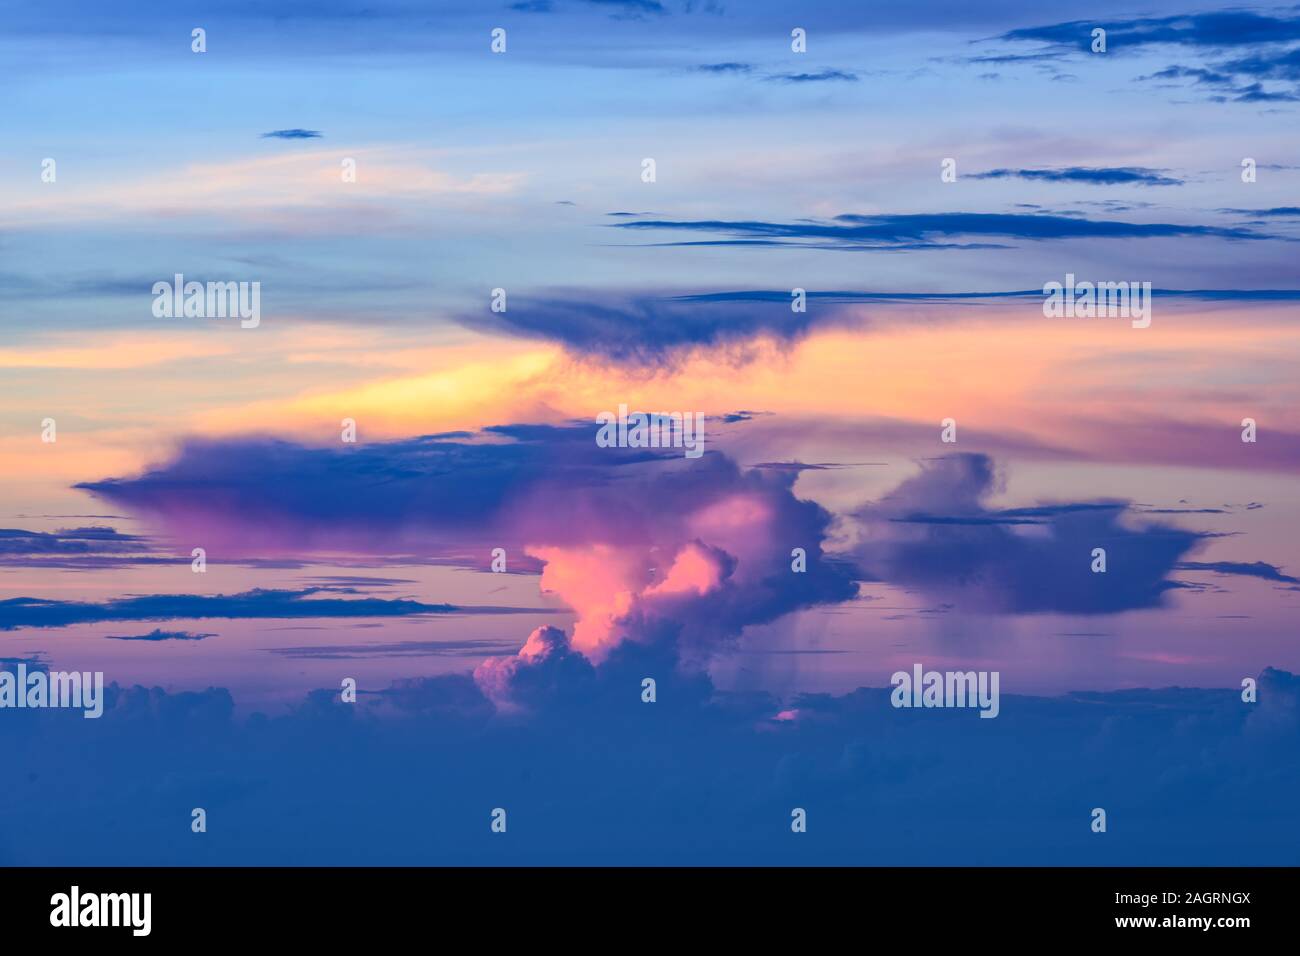 Splendida vista di alcune belle nuvole con forme diverse accesa durante il sunrise. Foto Stock